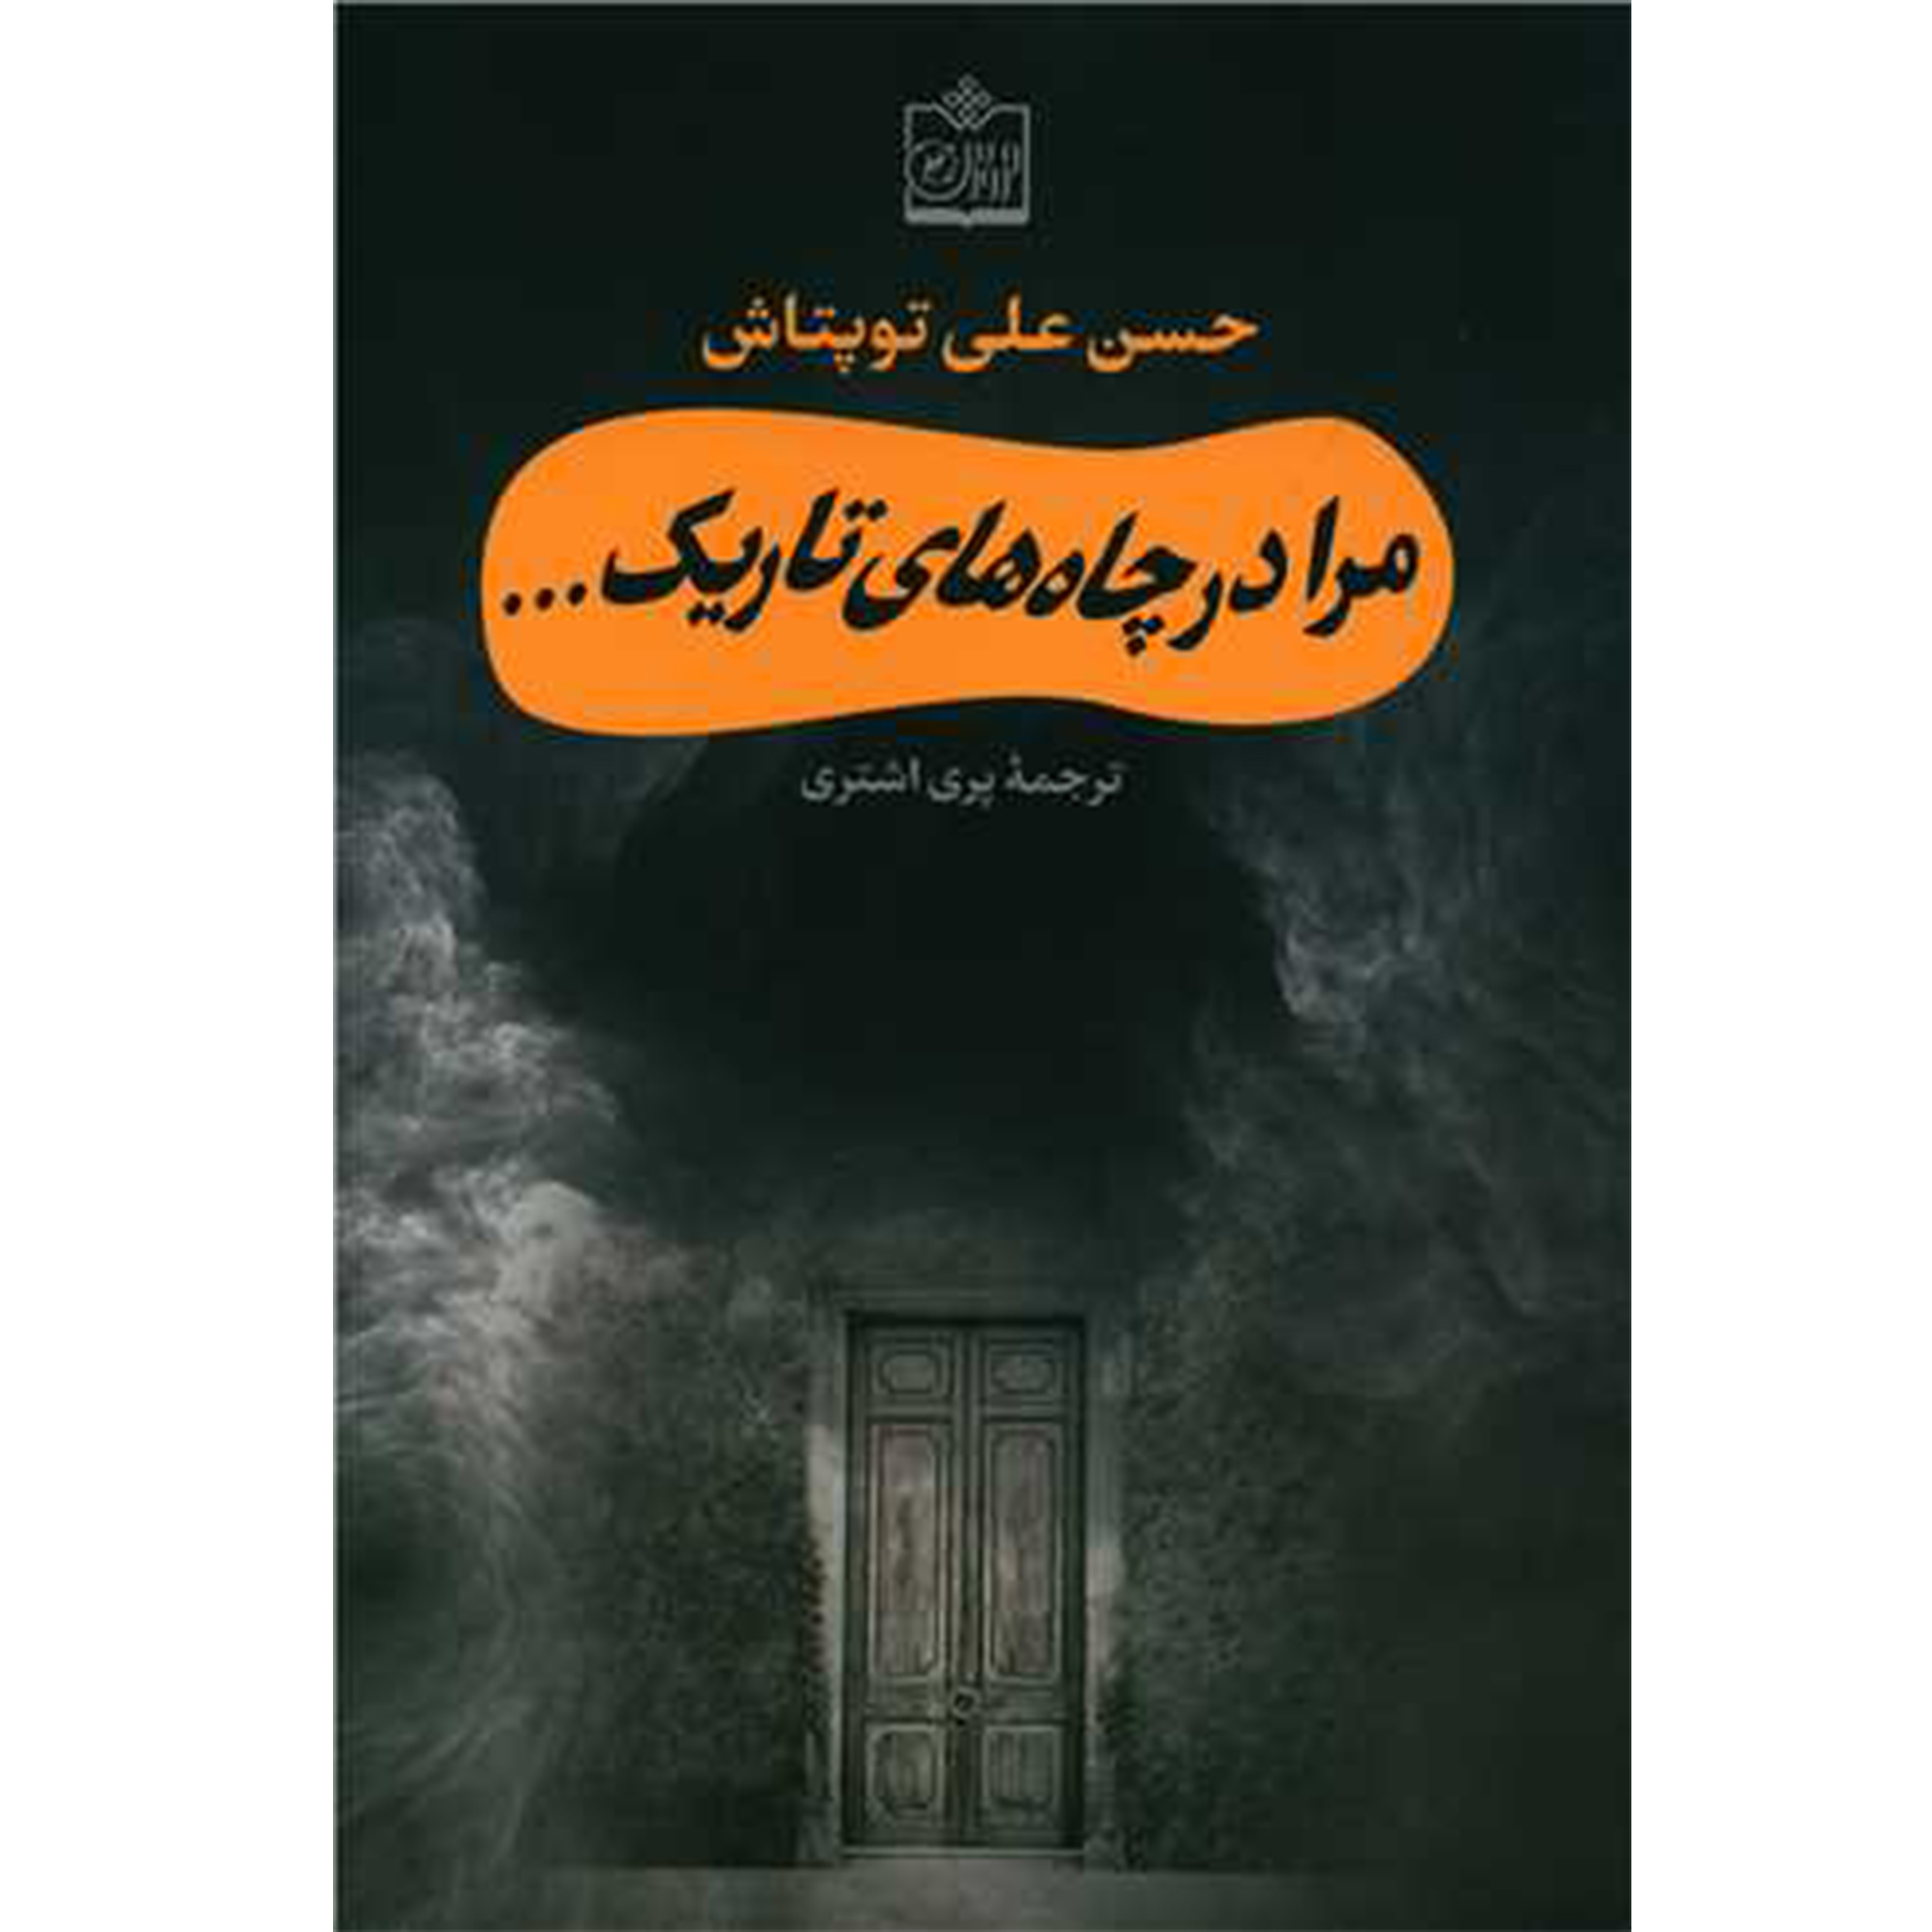 كتاب مرا در چاه هاي تاريك ... اثر حسن علي توپتاش انتشارات فروزش